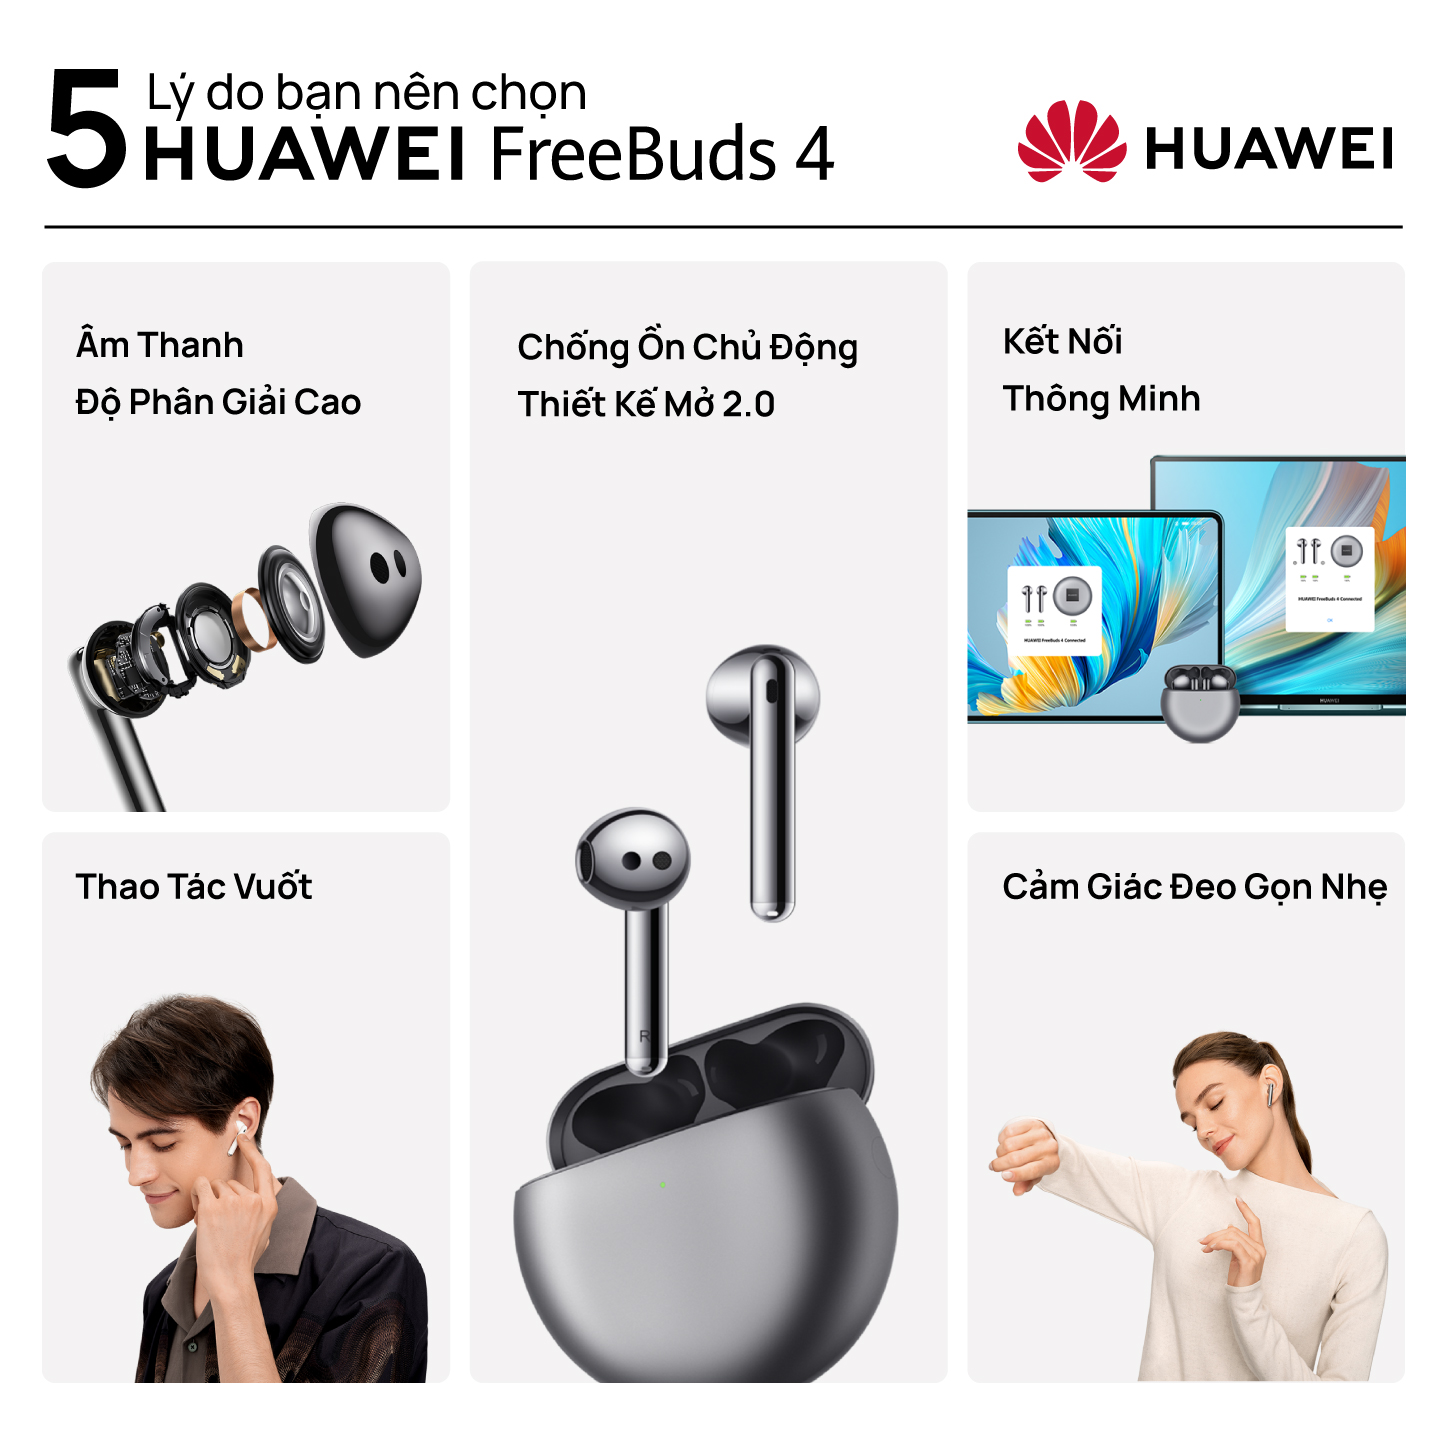 Tai Nghe Bluetooth HUAWEI FreeBuds 4 | Chống Ồn Chủ Động Thiết Kế Mở 2.0 | Thiết Kế Gọn Nhẹ | Âm Thanh Độ Phân Giải Cao | Hàng Chính Hãng